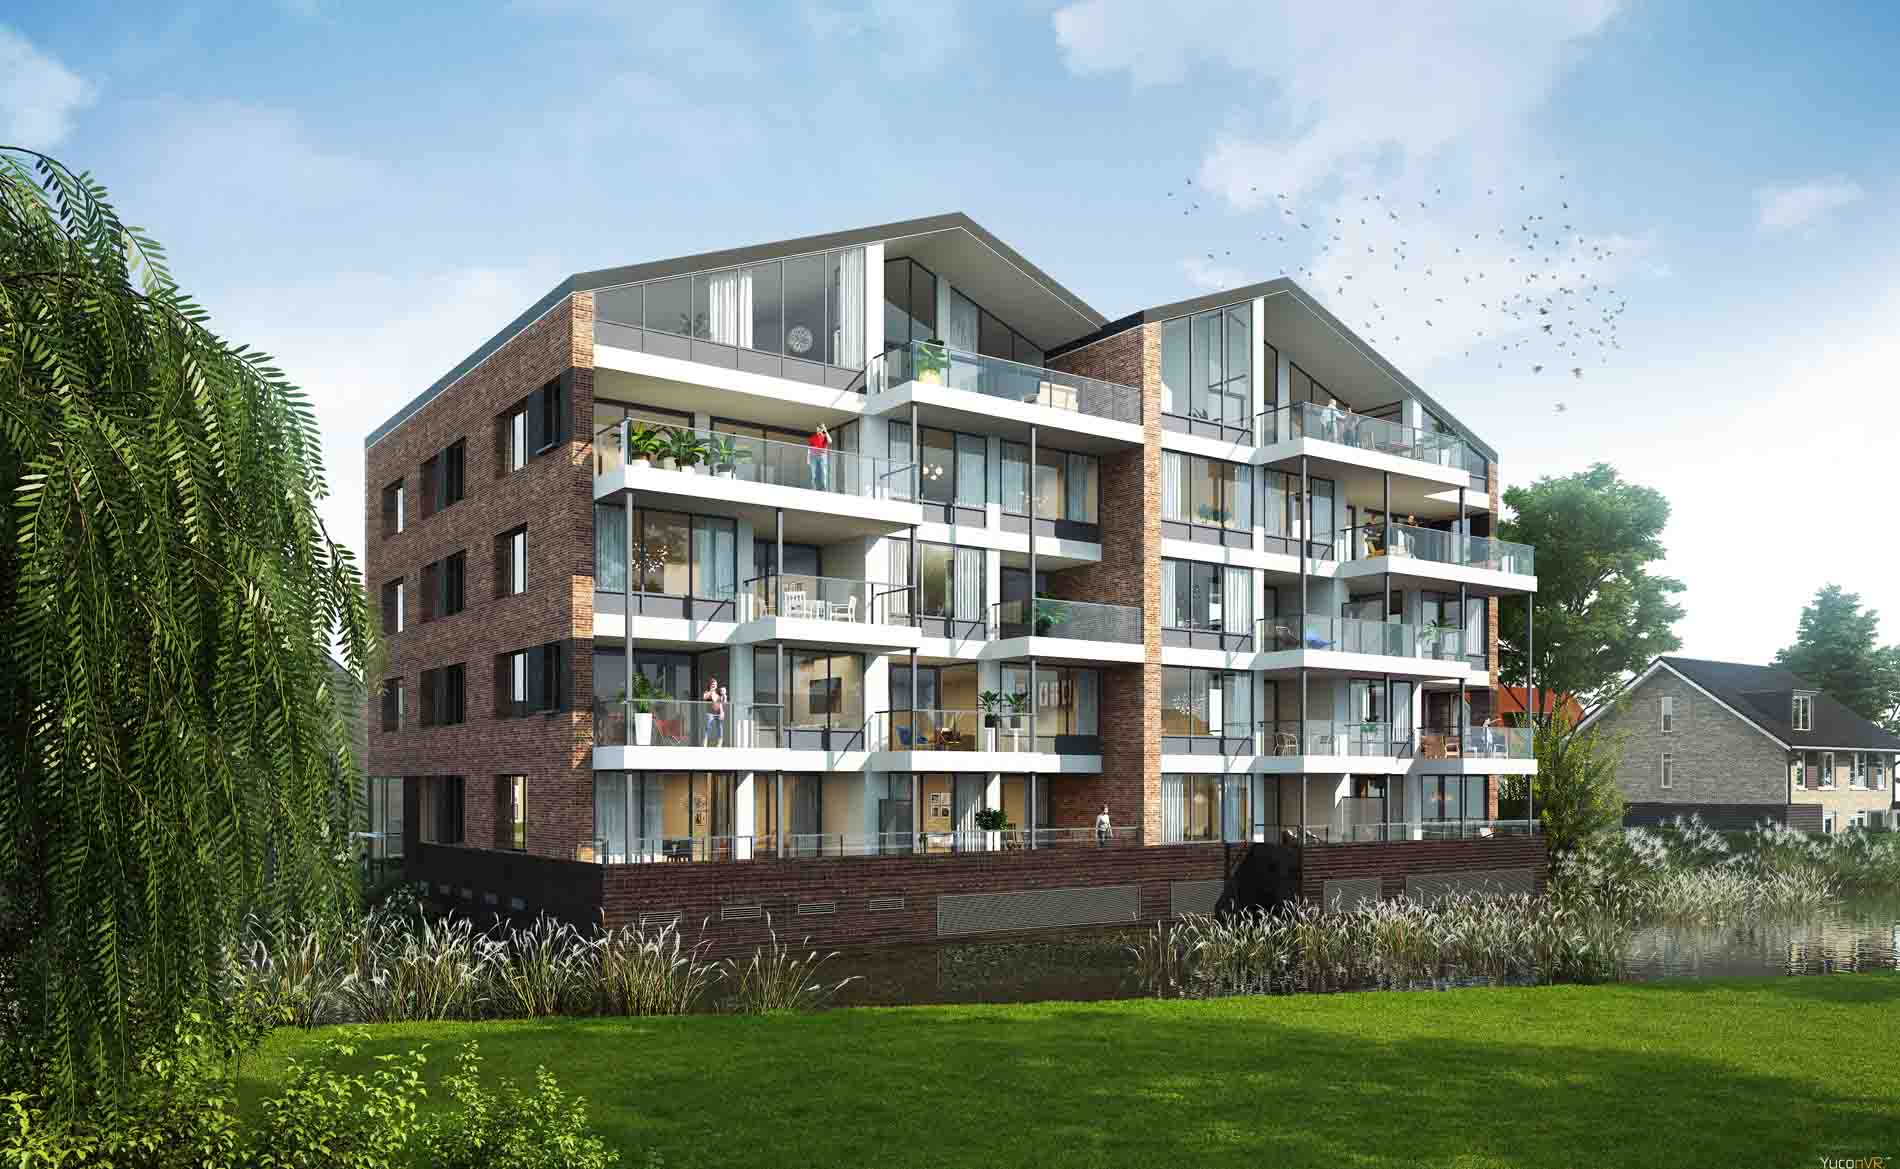 appartementen Simon van Haerlemstraat Heemskerk BBHD architecten dorps moderne architectuur woningen